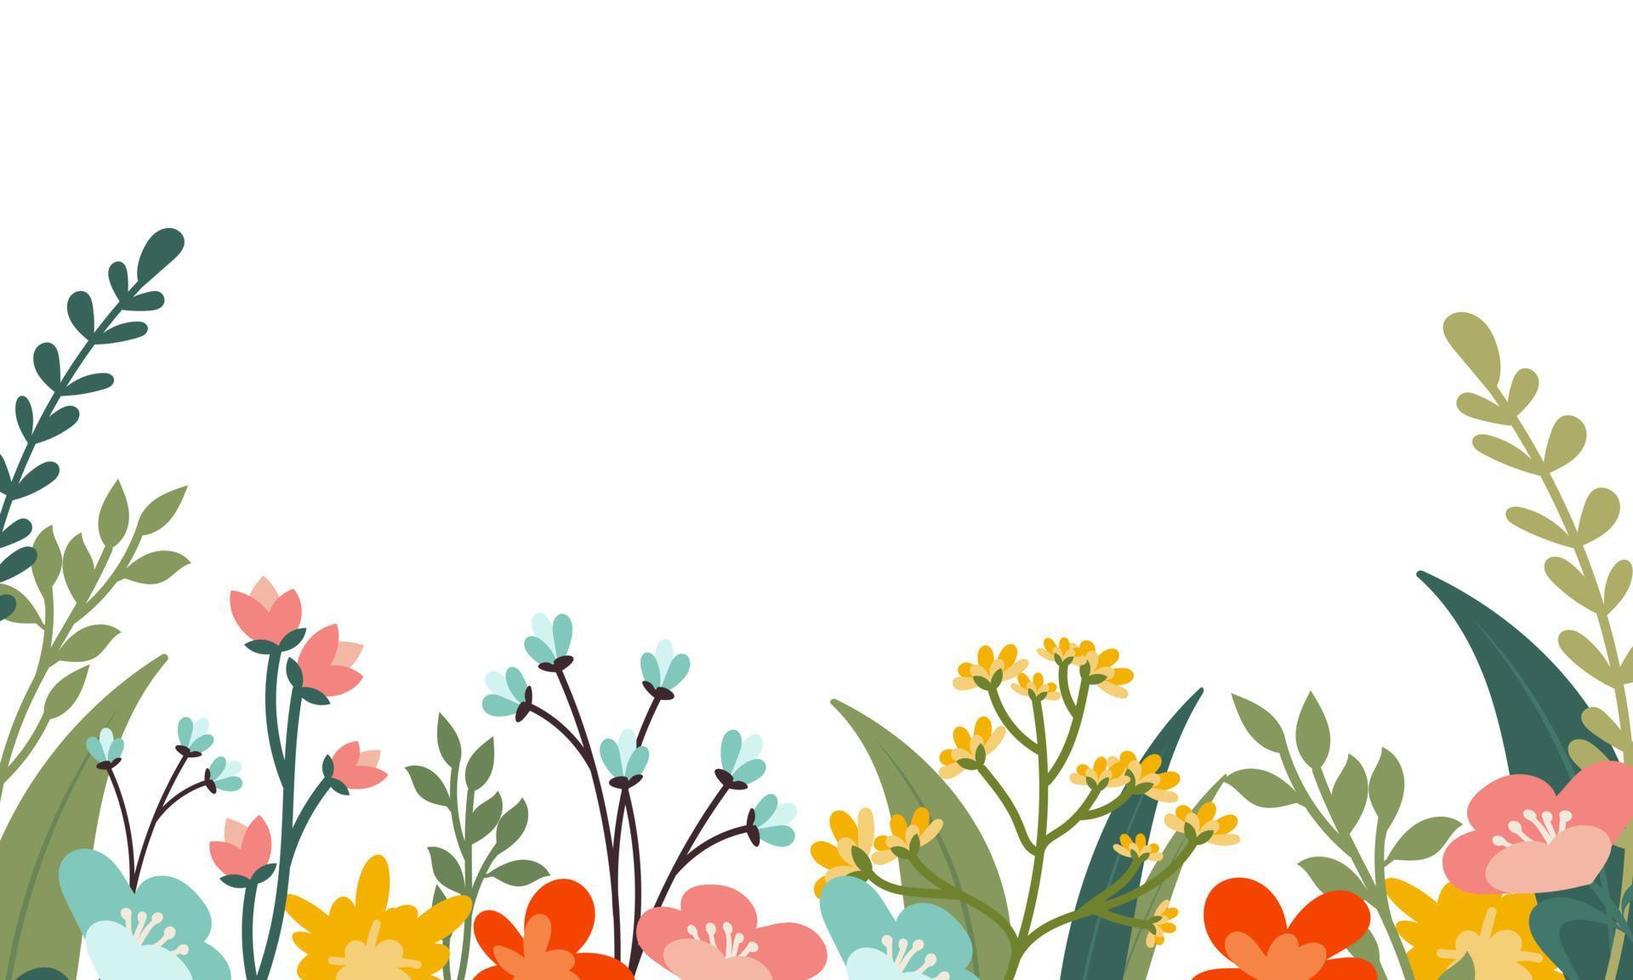 bannière de vecteur minimaliste de plantes. fleurs dessinées à la main, herbe, branches, feuilles sur fond blanc. motif horizontal simple vert. style plat simple. tous les éléments sont isolés et modifiables